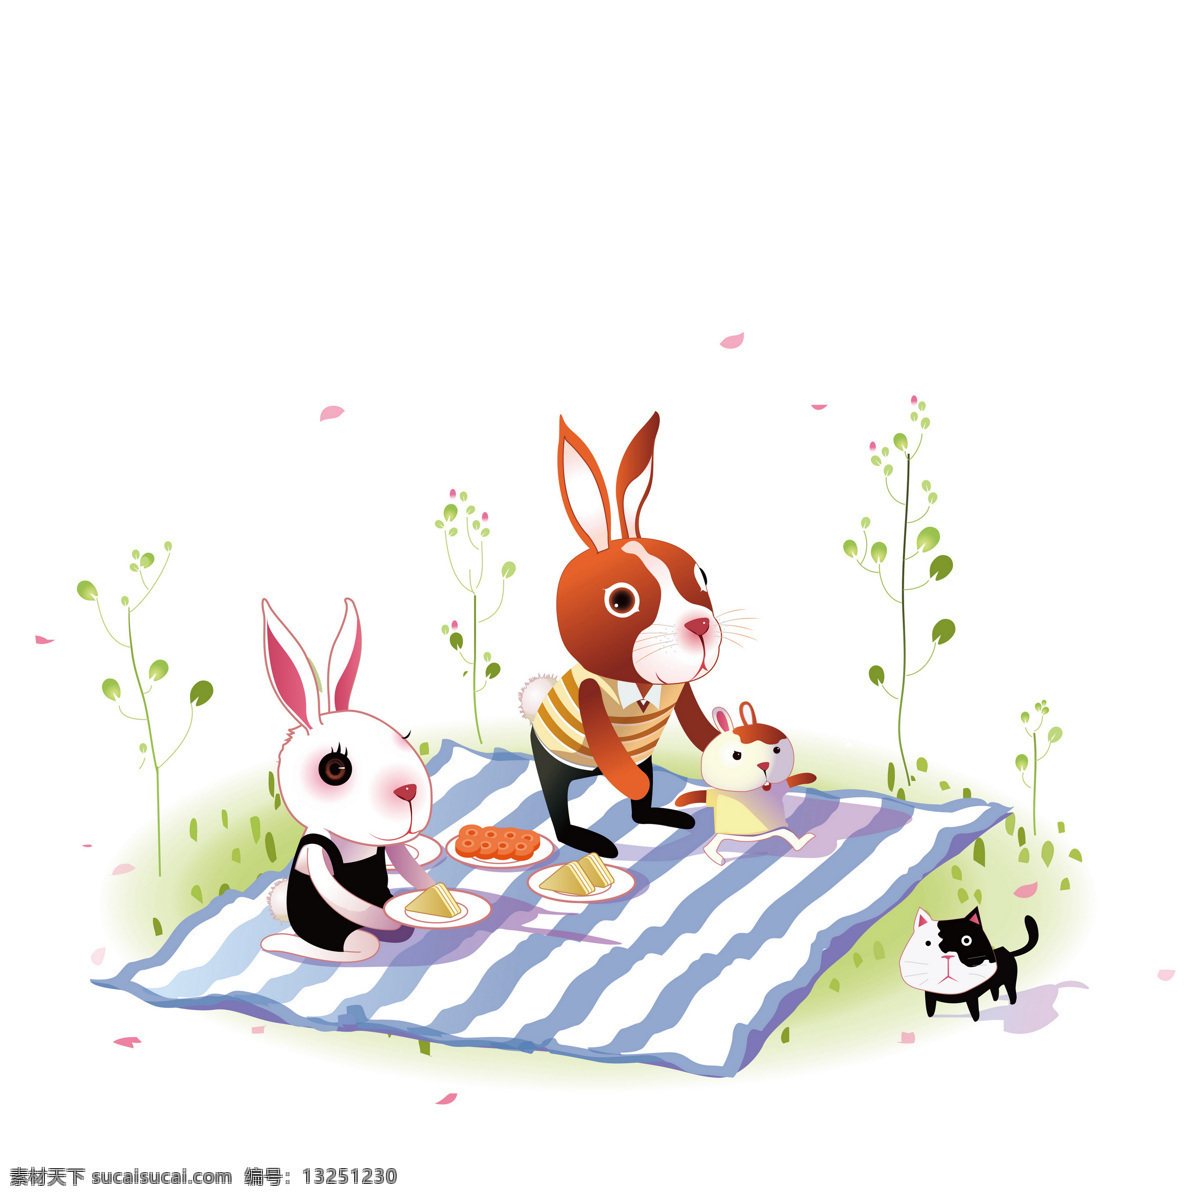 插画 动漫动画 家庭 郊游 卡通 卡通兔 可爱 漫画 兔 设计素材 模板下载 兔子 兔年 生肖 野餐 插画集